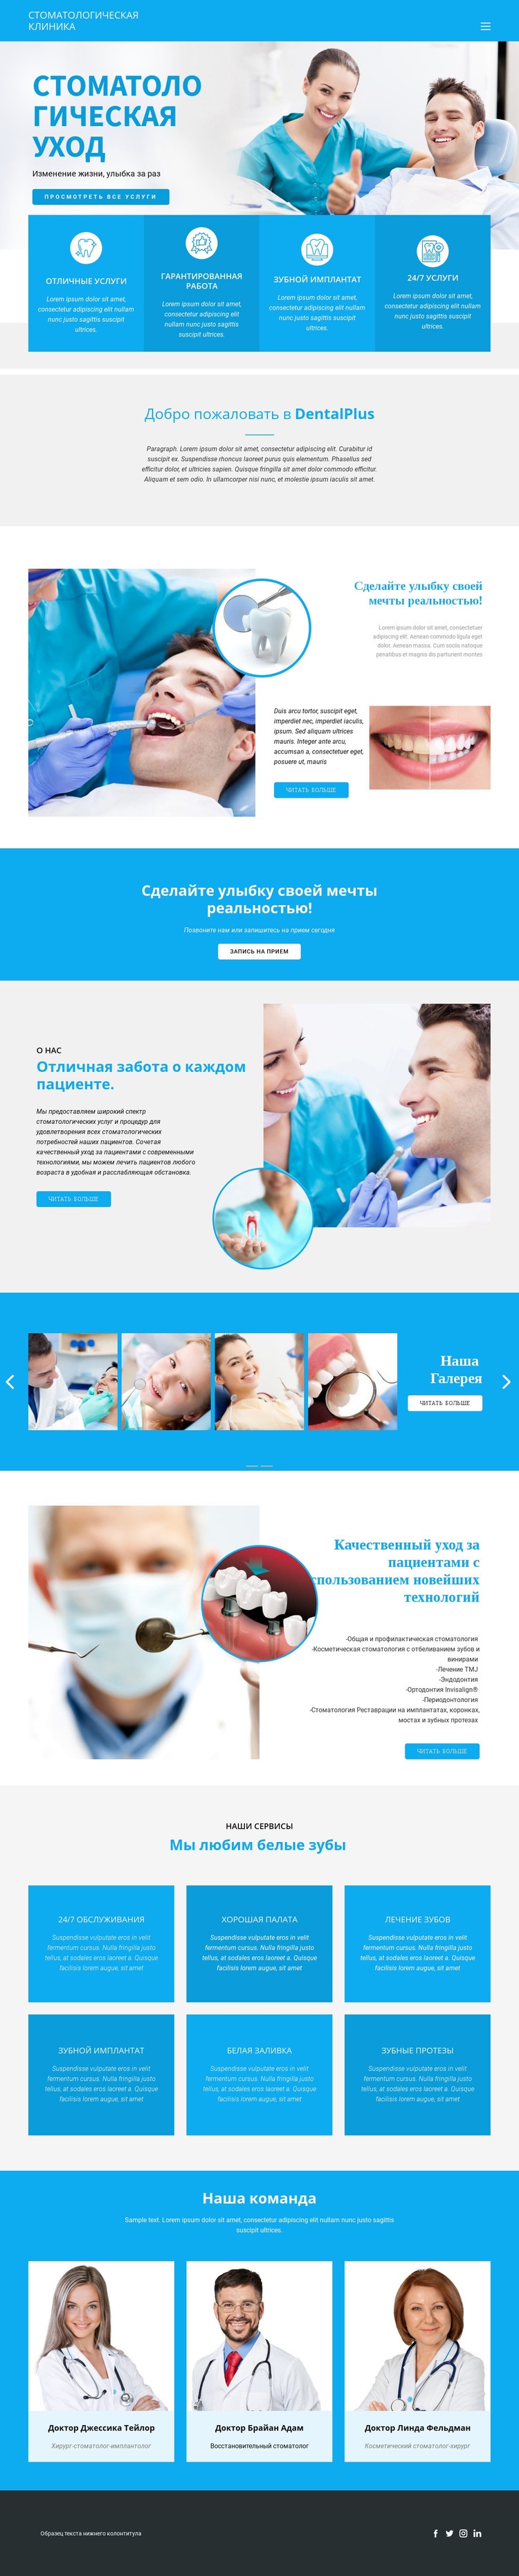 Стоматология и медицина Шаблоны конструктора веб-сайтов